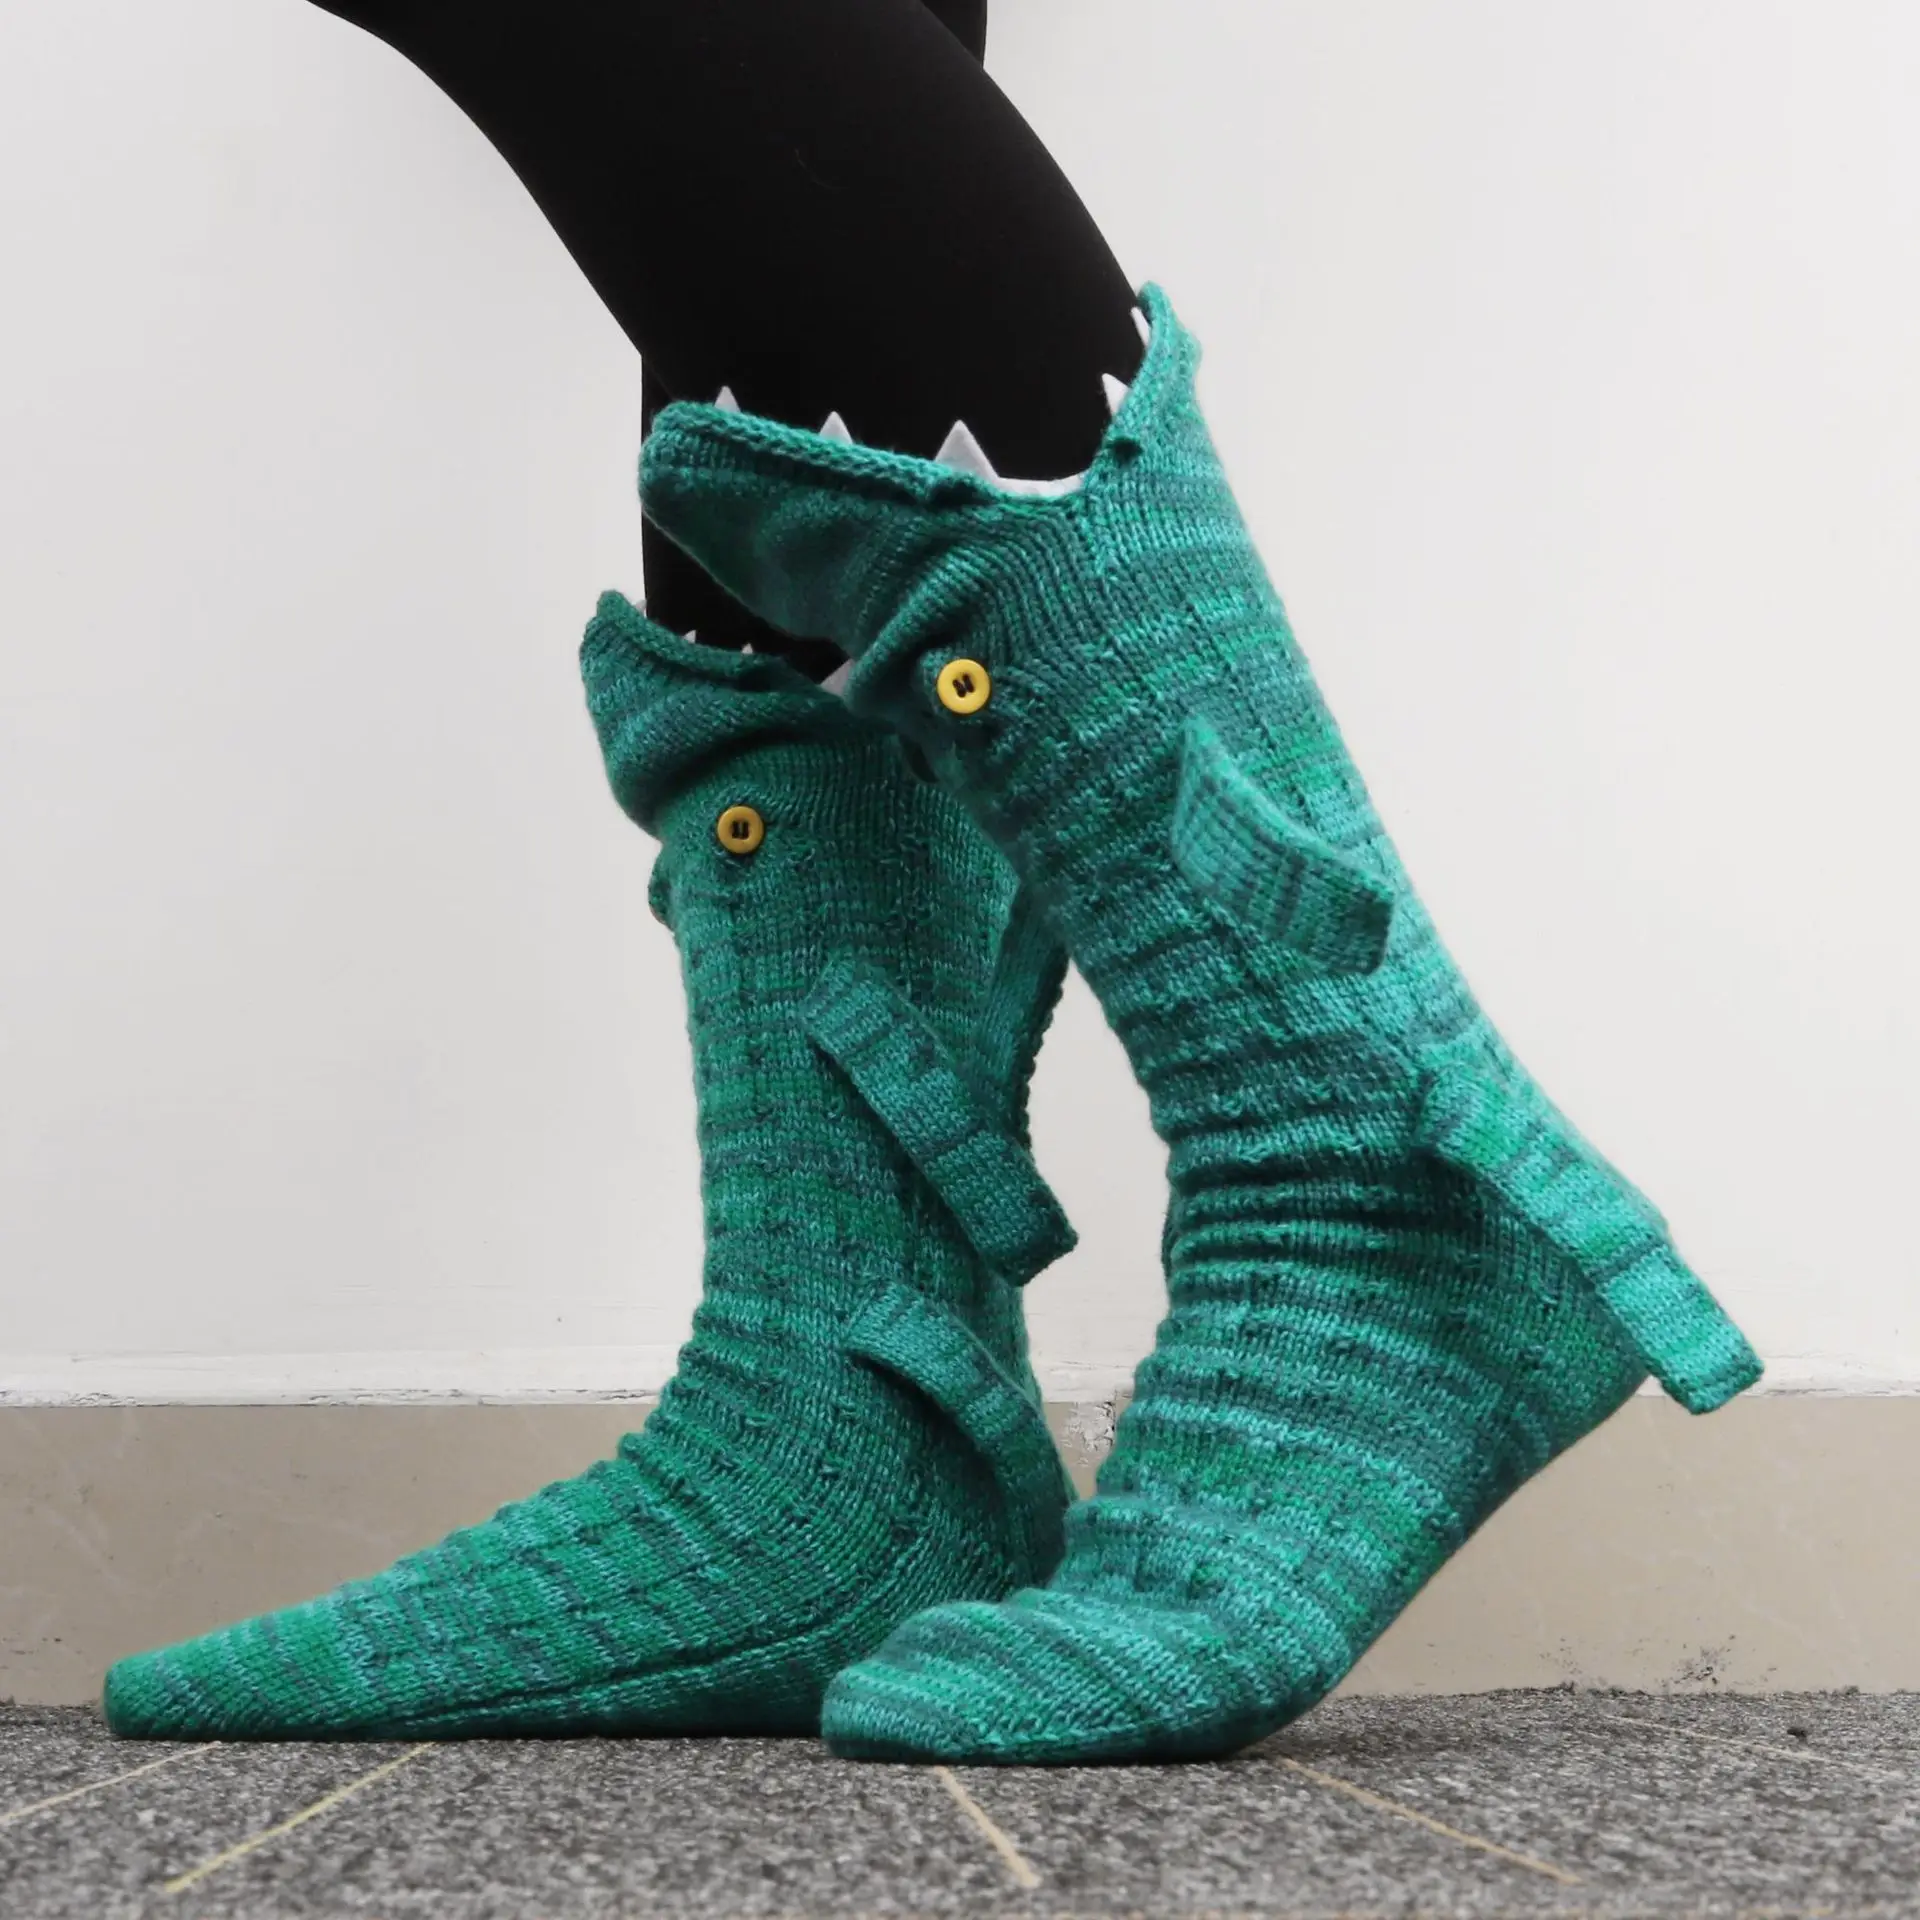 

New Winter Animal Knitted Socks Shark Chameleon Crocodile Socks Cute Novelty Unisex Outting Warm Indoor Floor Sock Festival Gift